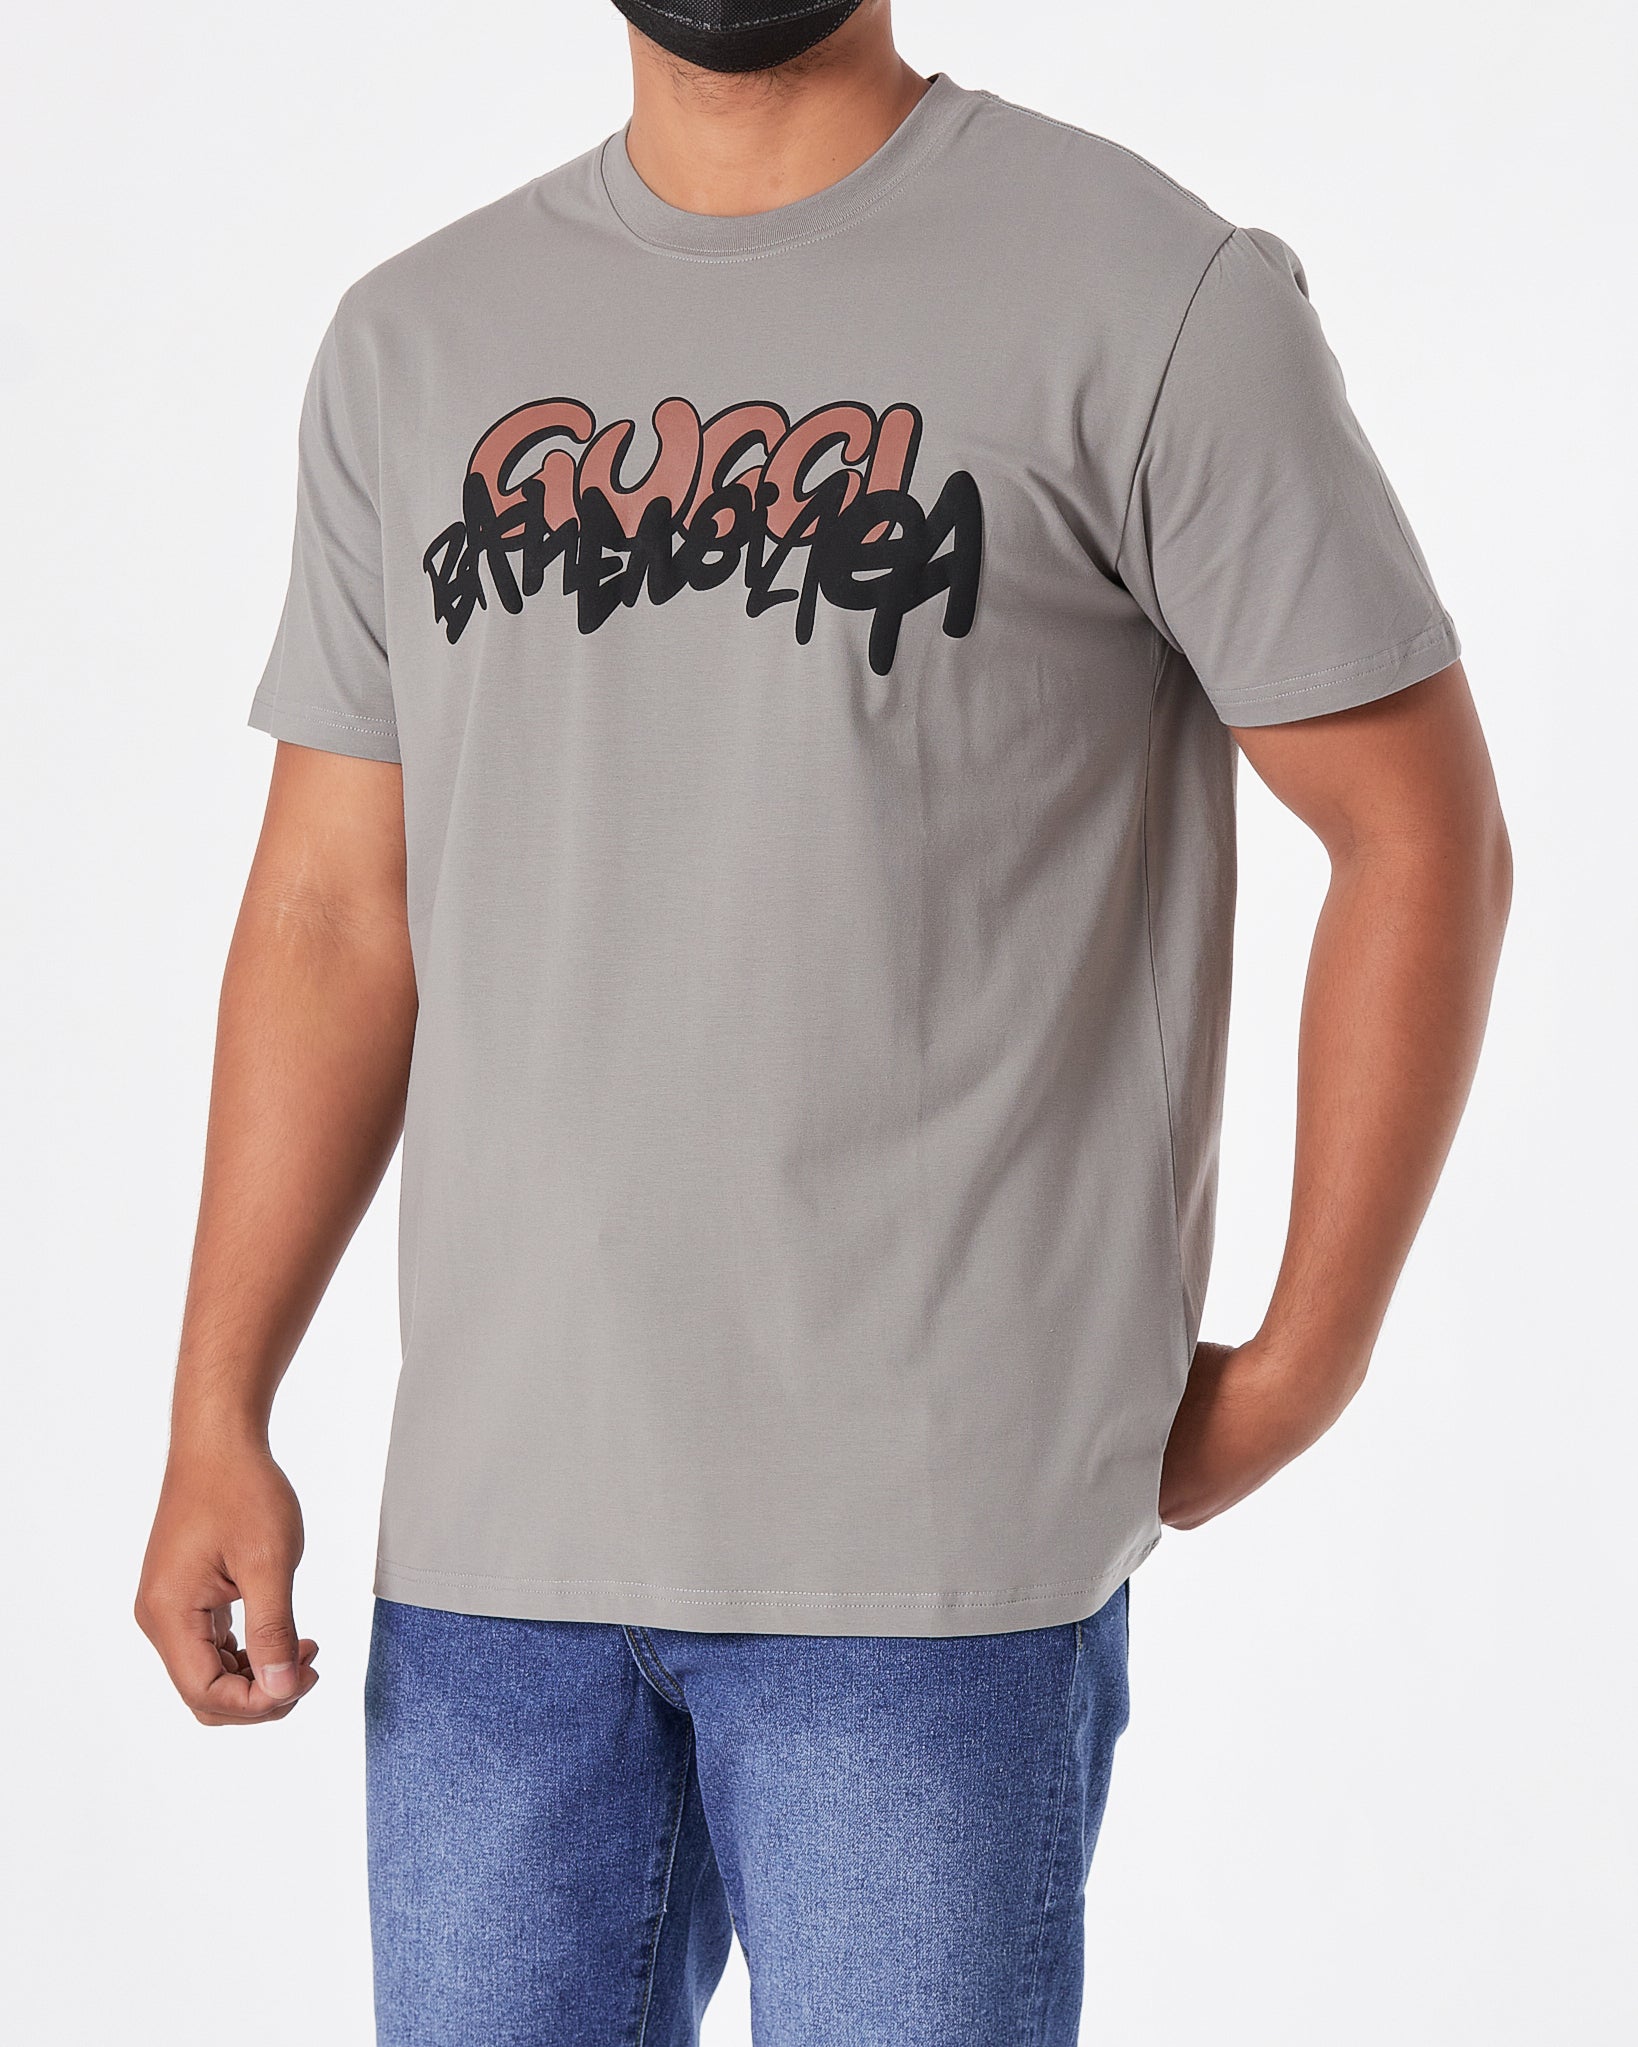 GUC x BB Printed Men Grey  T-Shirt 18.90